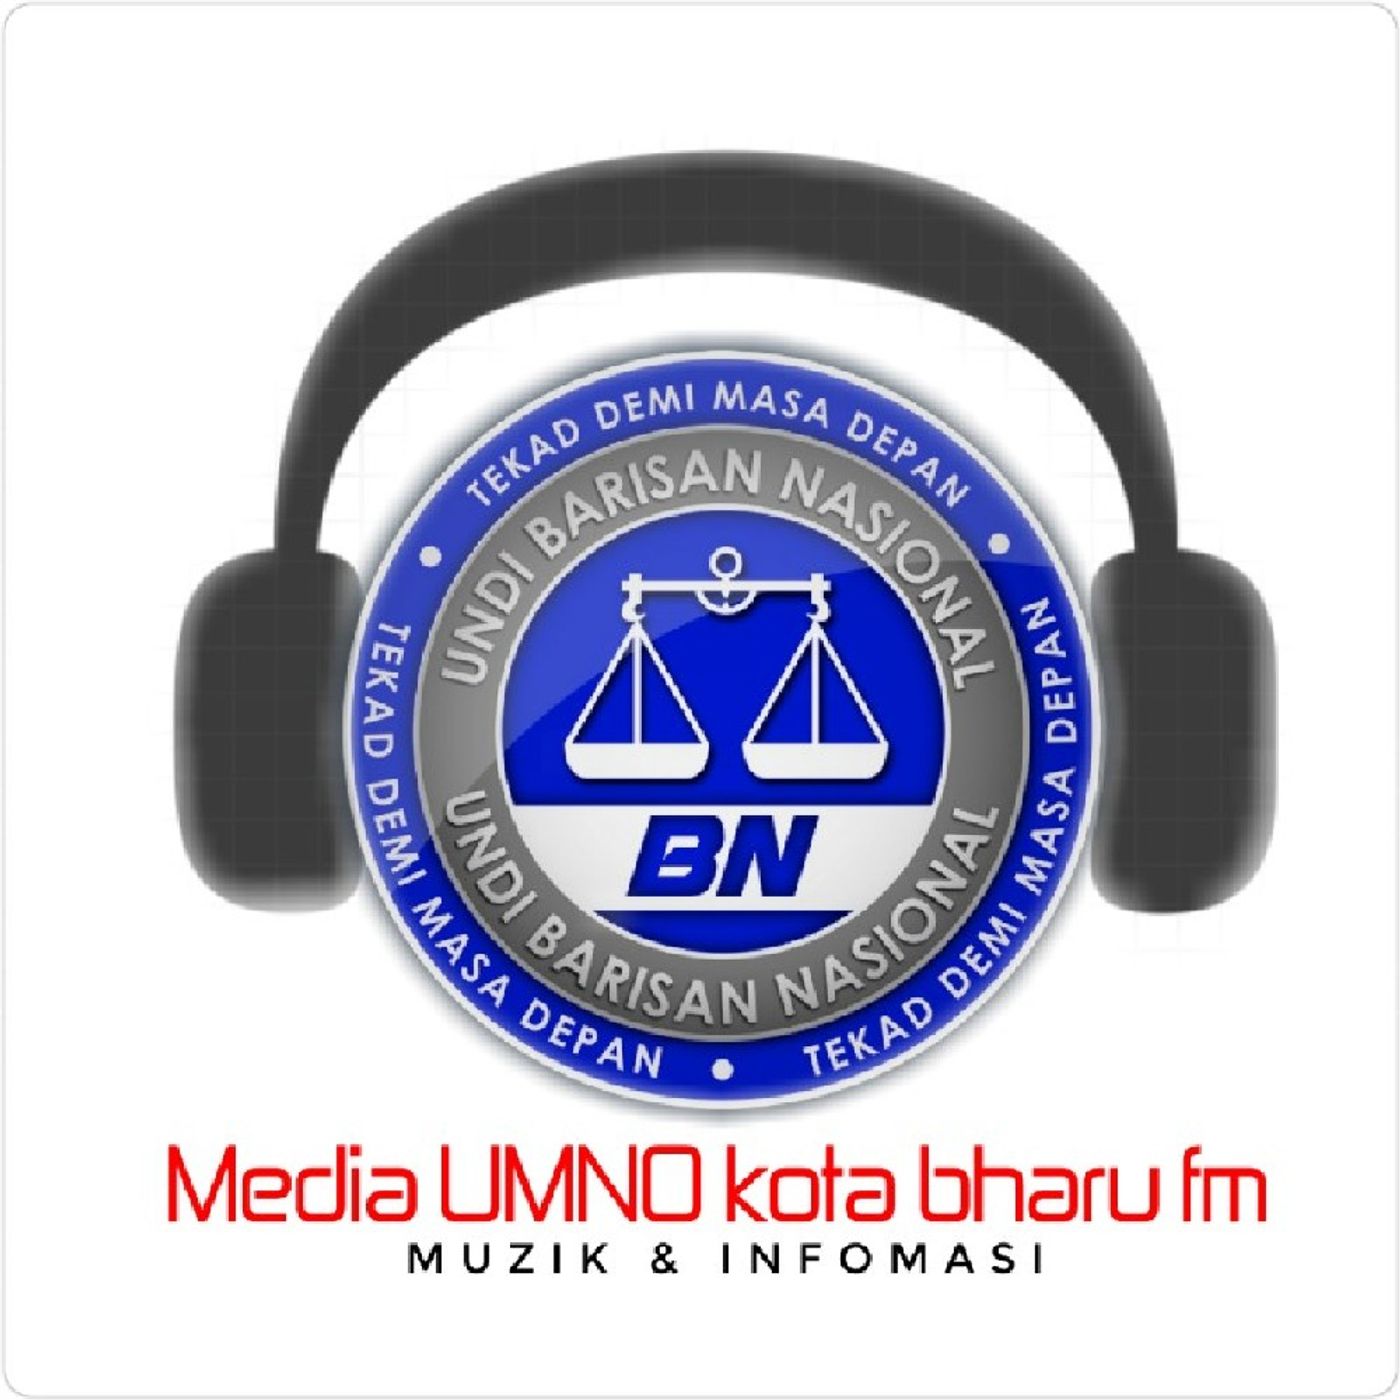 Media UMNO Kota Bharu fm